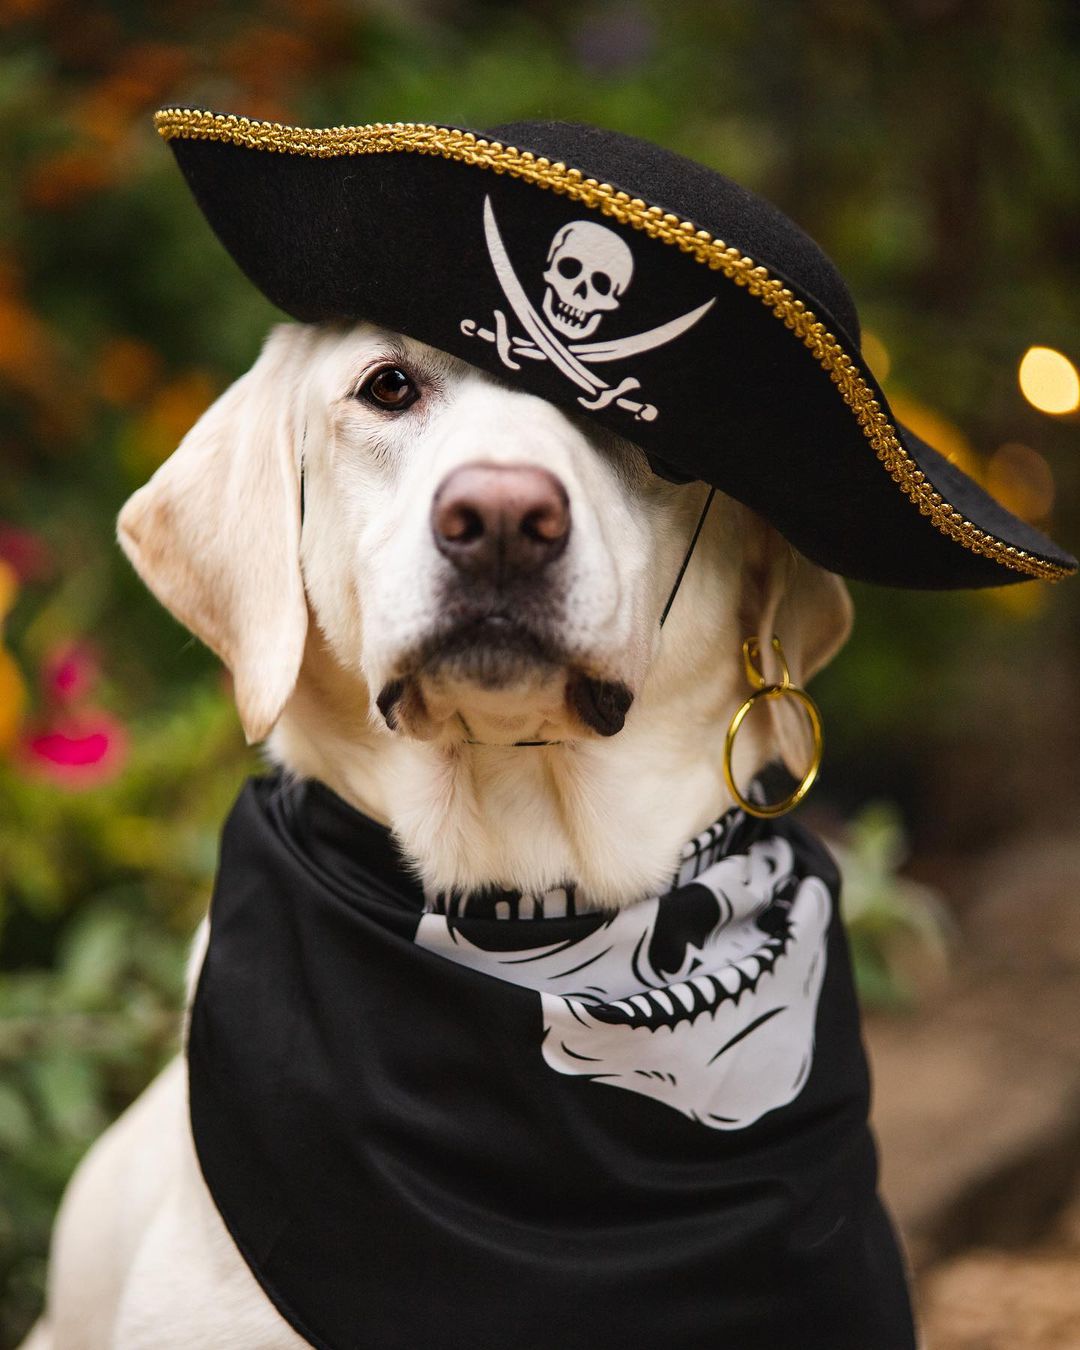 dog in Pirate costume